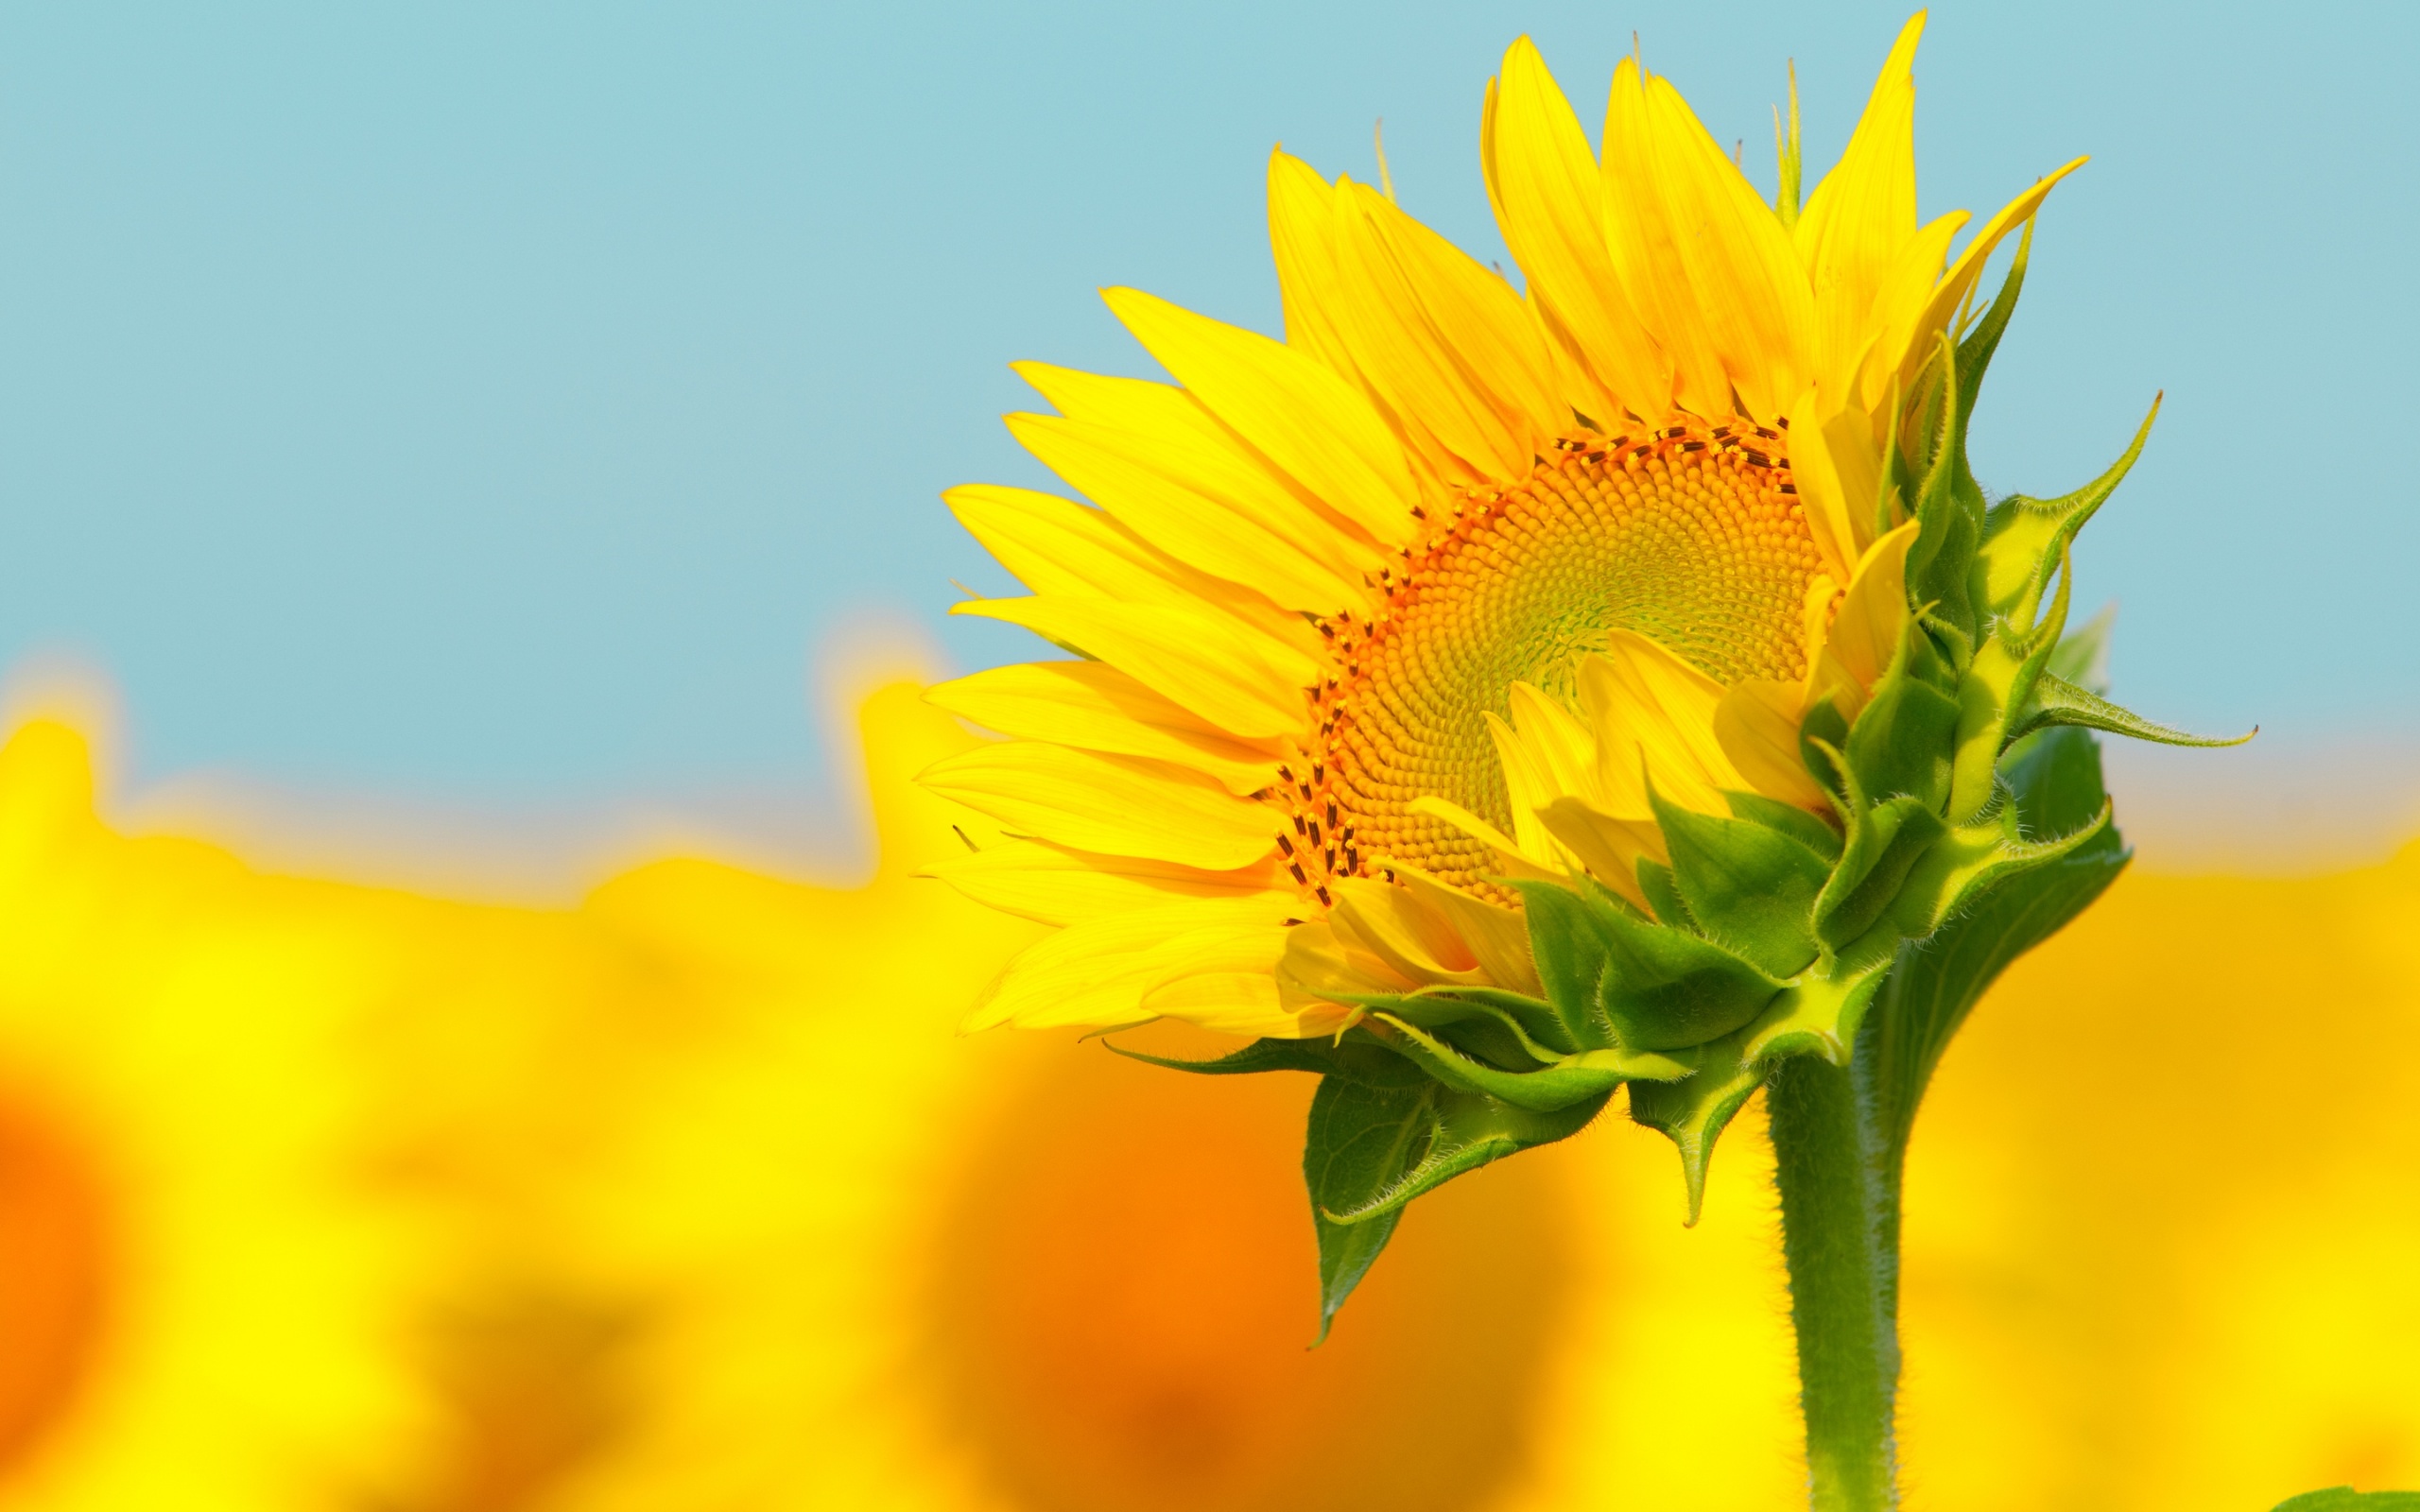 HD Wallpaper 1080p Sunflower